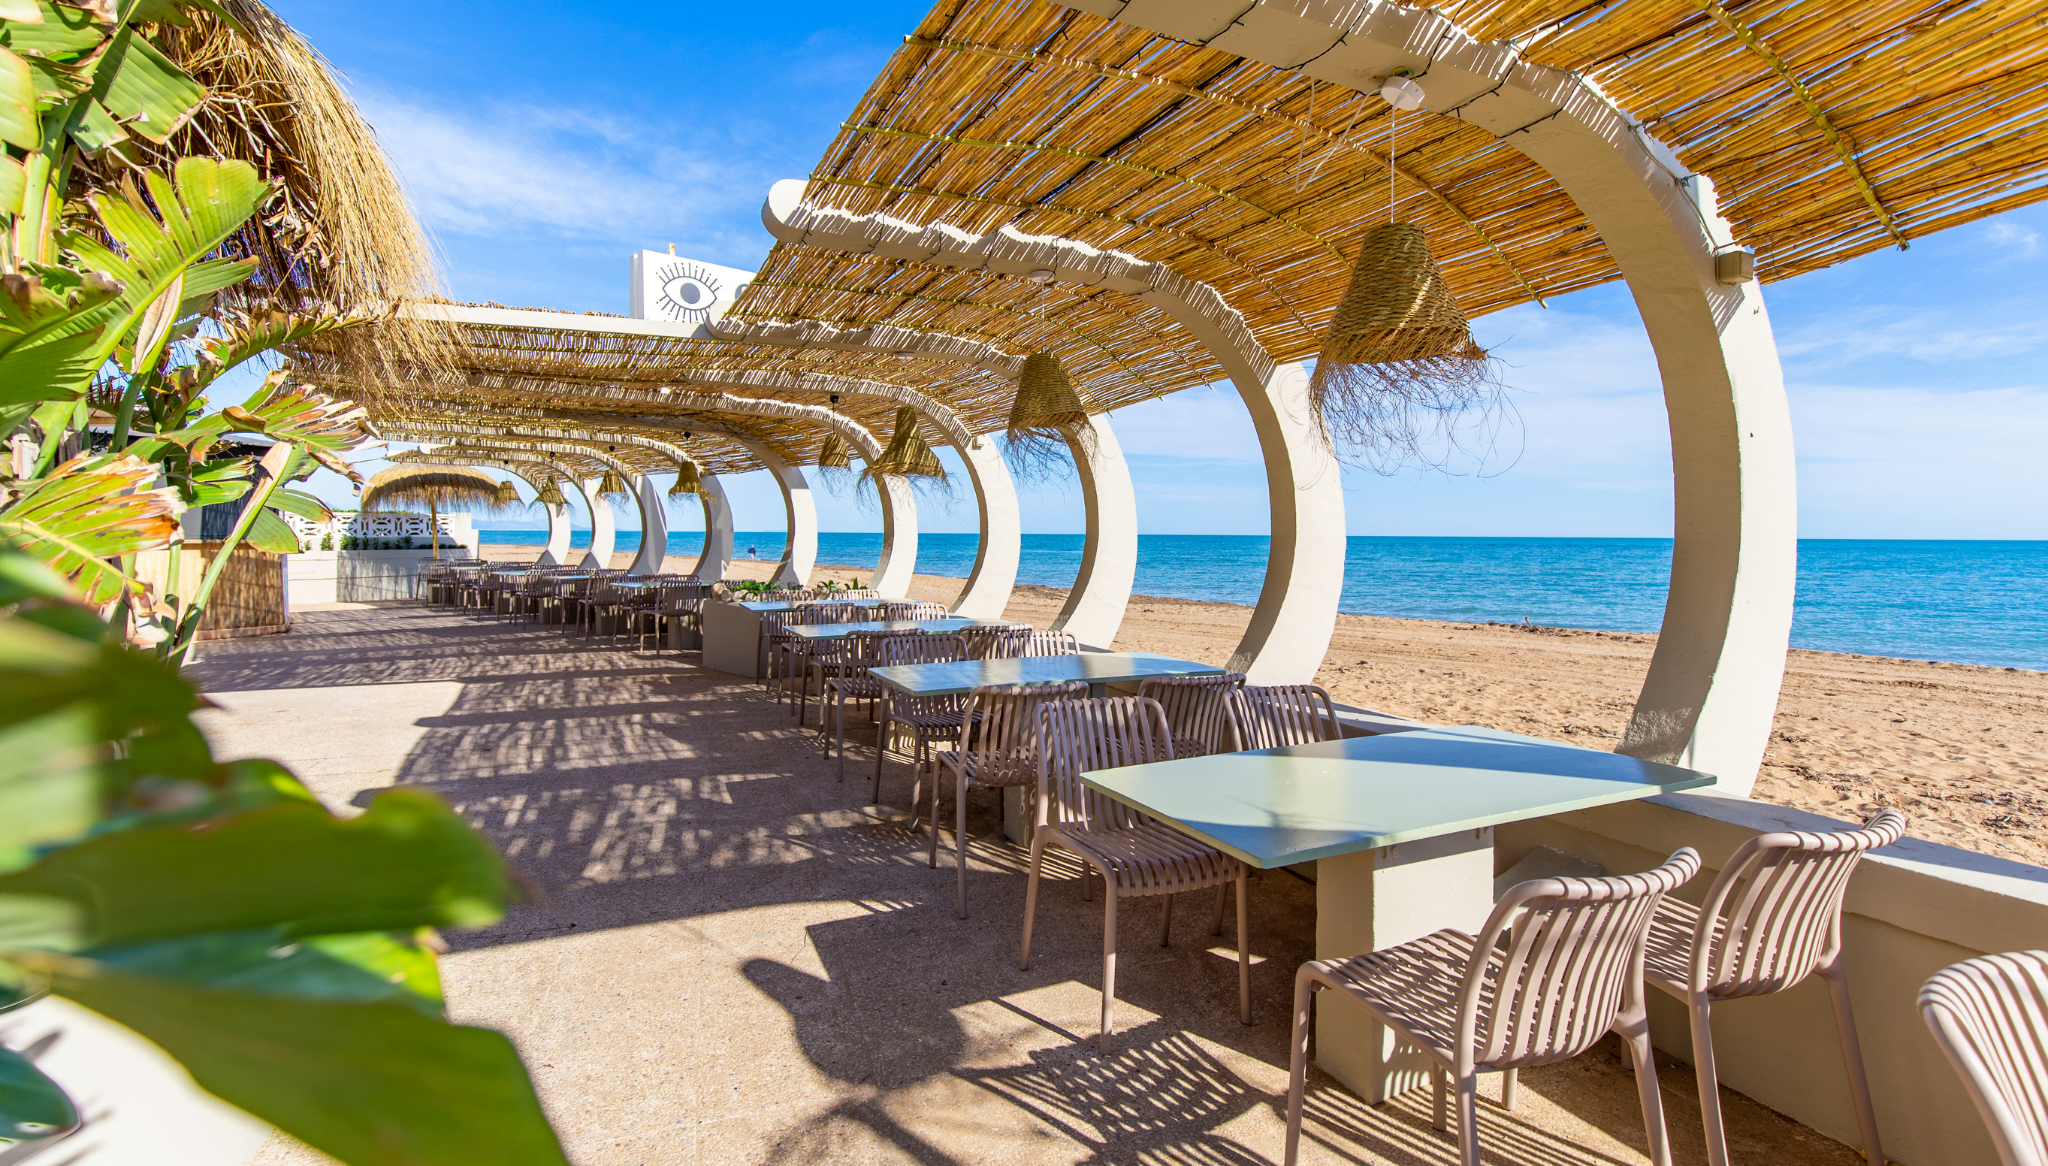 Terraza del restaurante a pie de playa